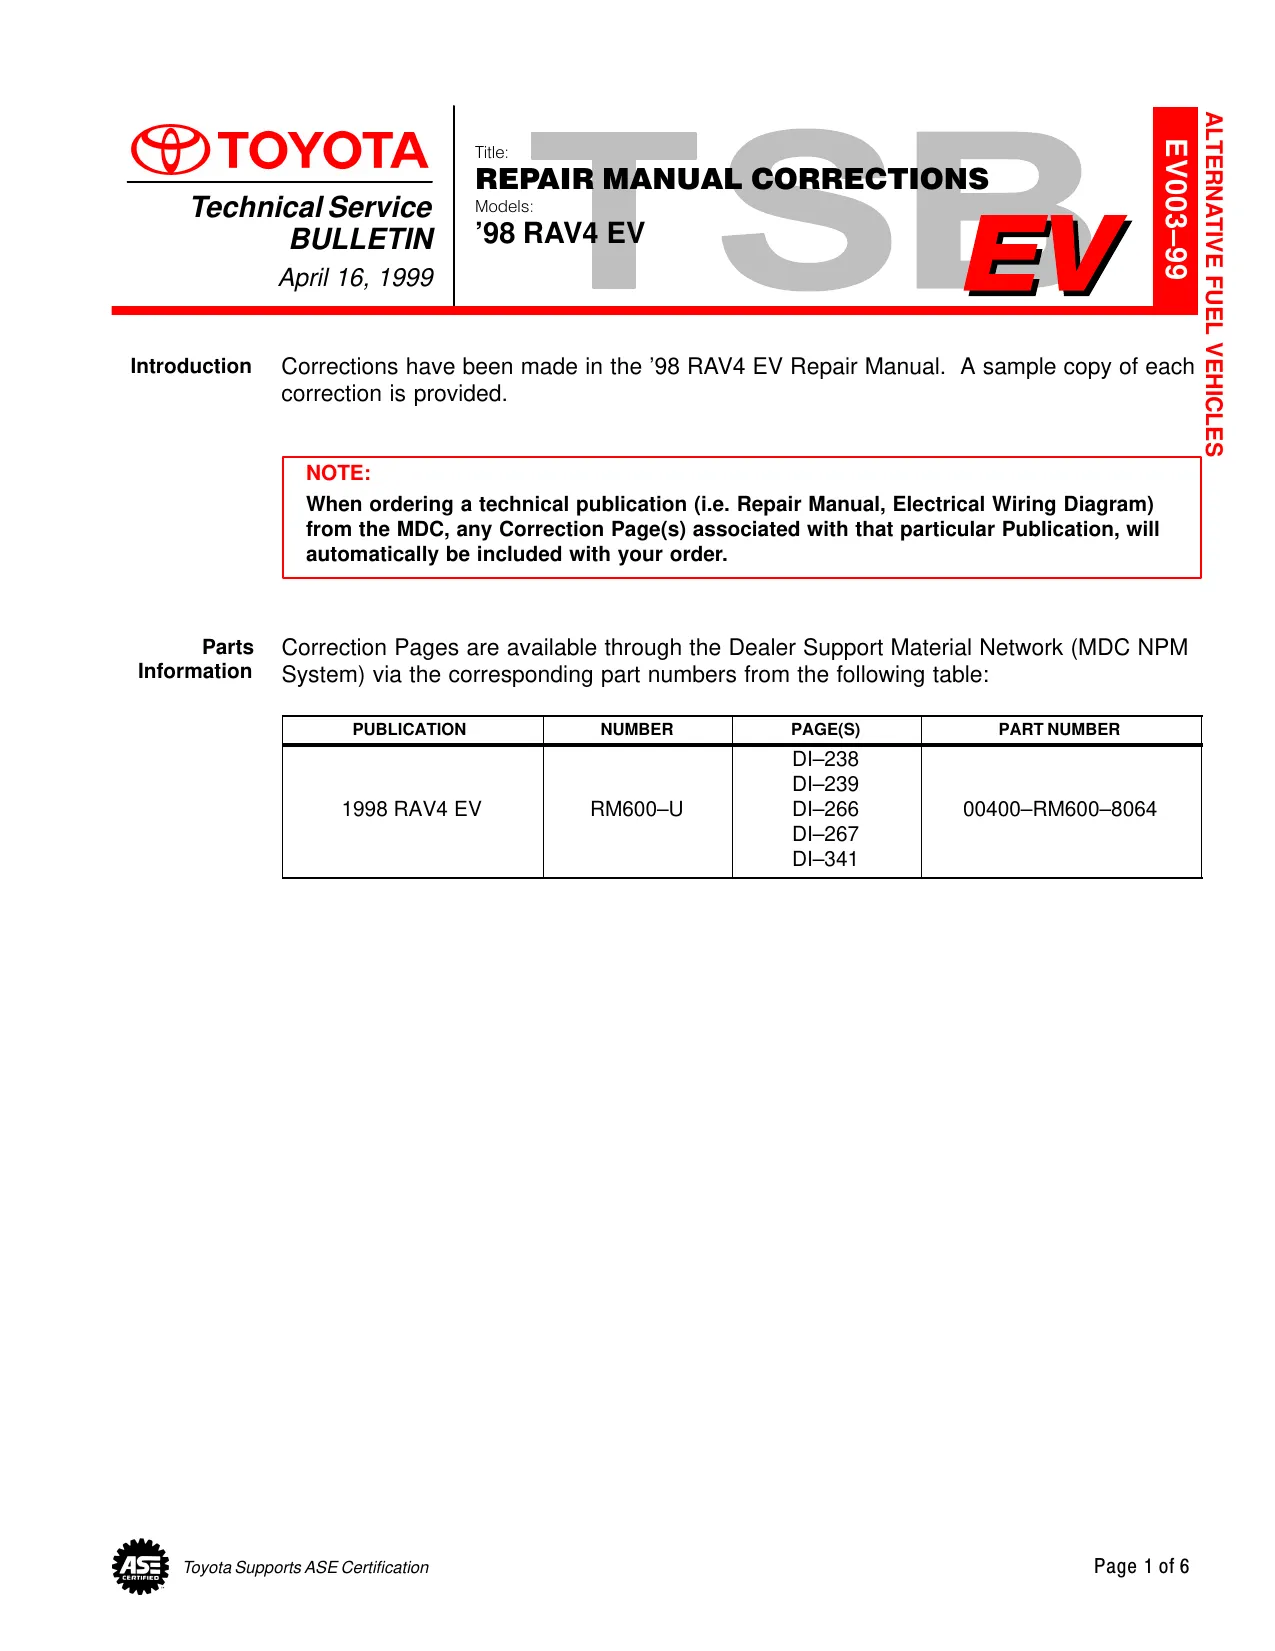 1996-2000 Toyota RAV4 repair manual